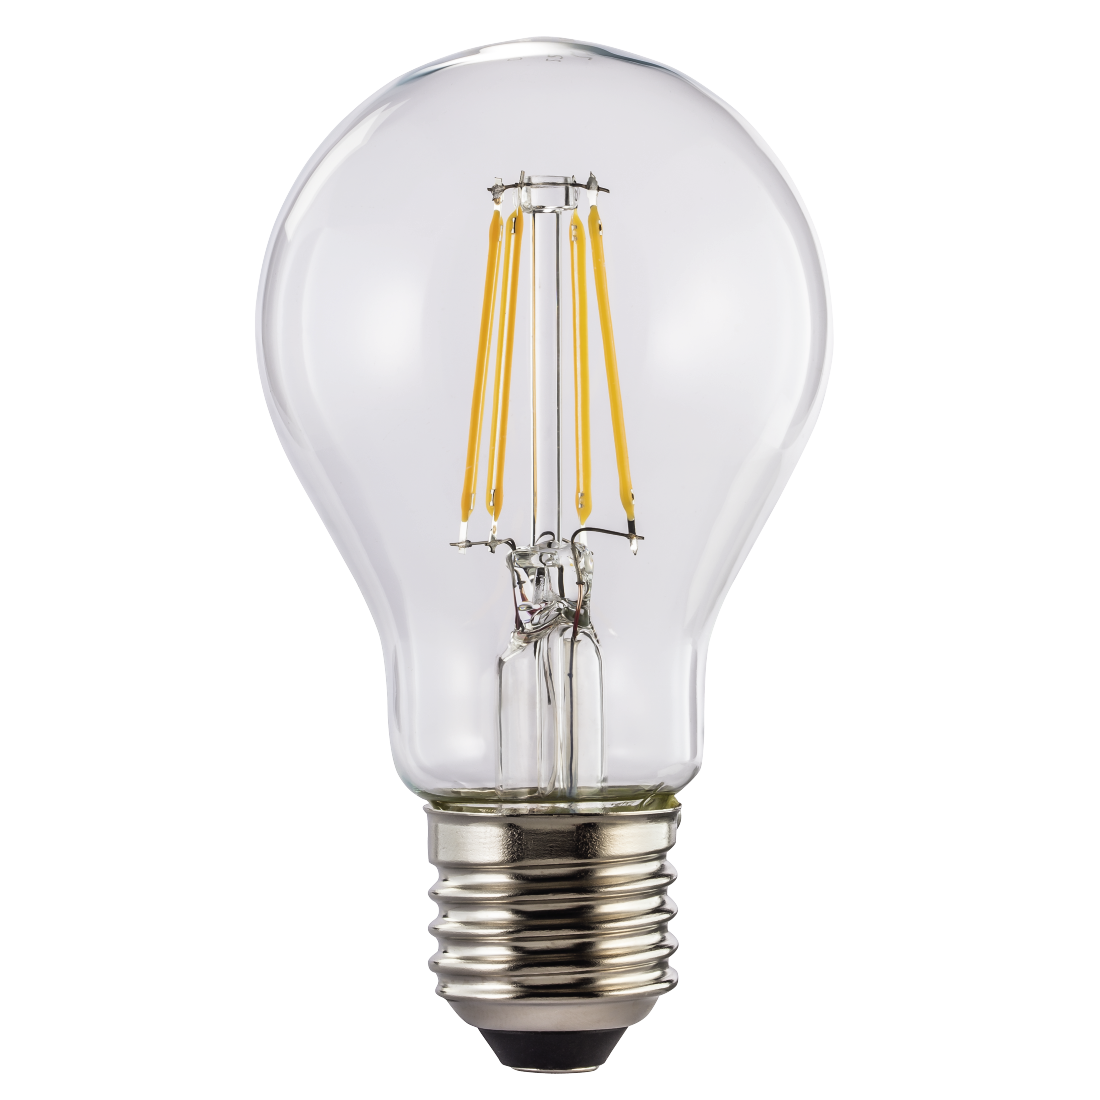 abx High-Res Image - Xavax, Ampoule filament LED, E27, 470lm rempl. ampoule incand., 40W, blc chd